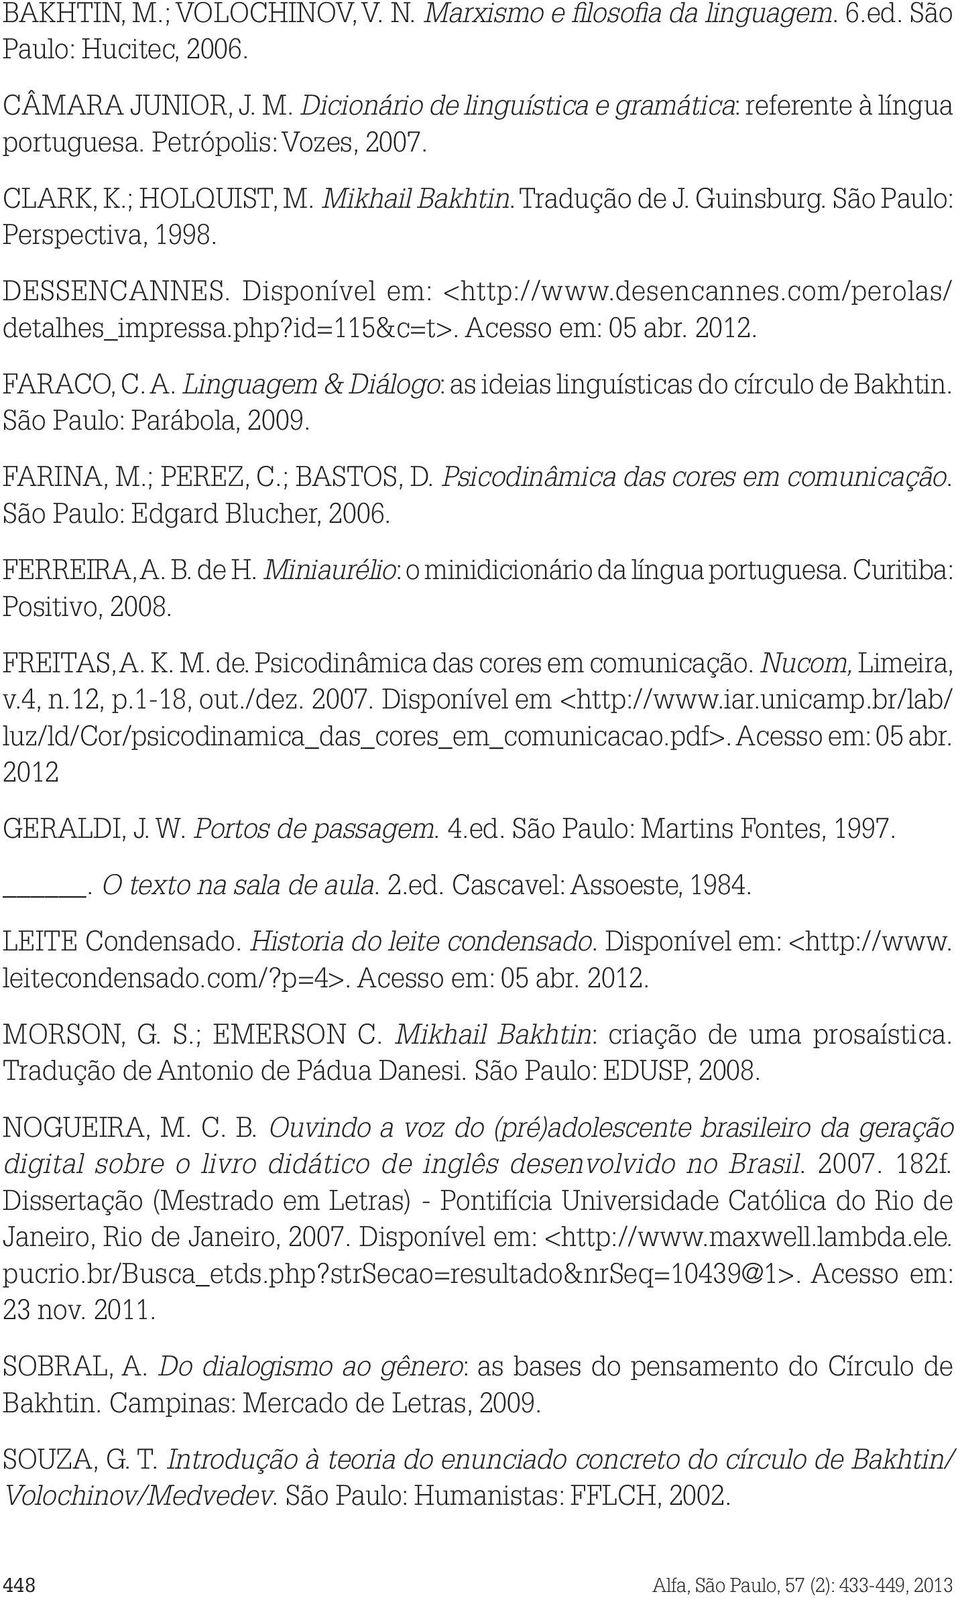 com/perolas/ detalhes_impressa.php?id=115&c=t>. Acesso em: 05 abr. 2012. FARACO, C. A. Linguagem & Diálogo: as ideias linguísticas do círculo de Bakhtin. São Paulo: Parábola, 2009. FARINA, M.